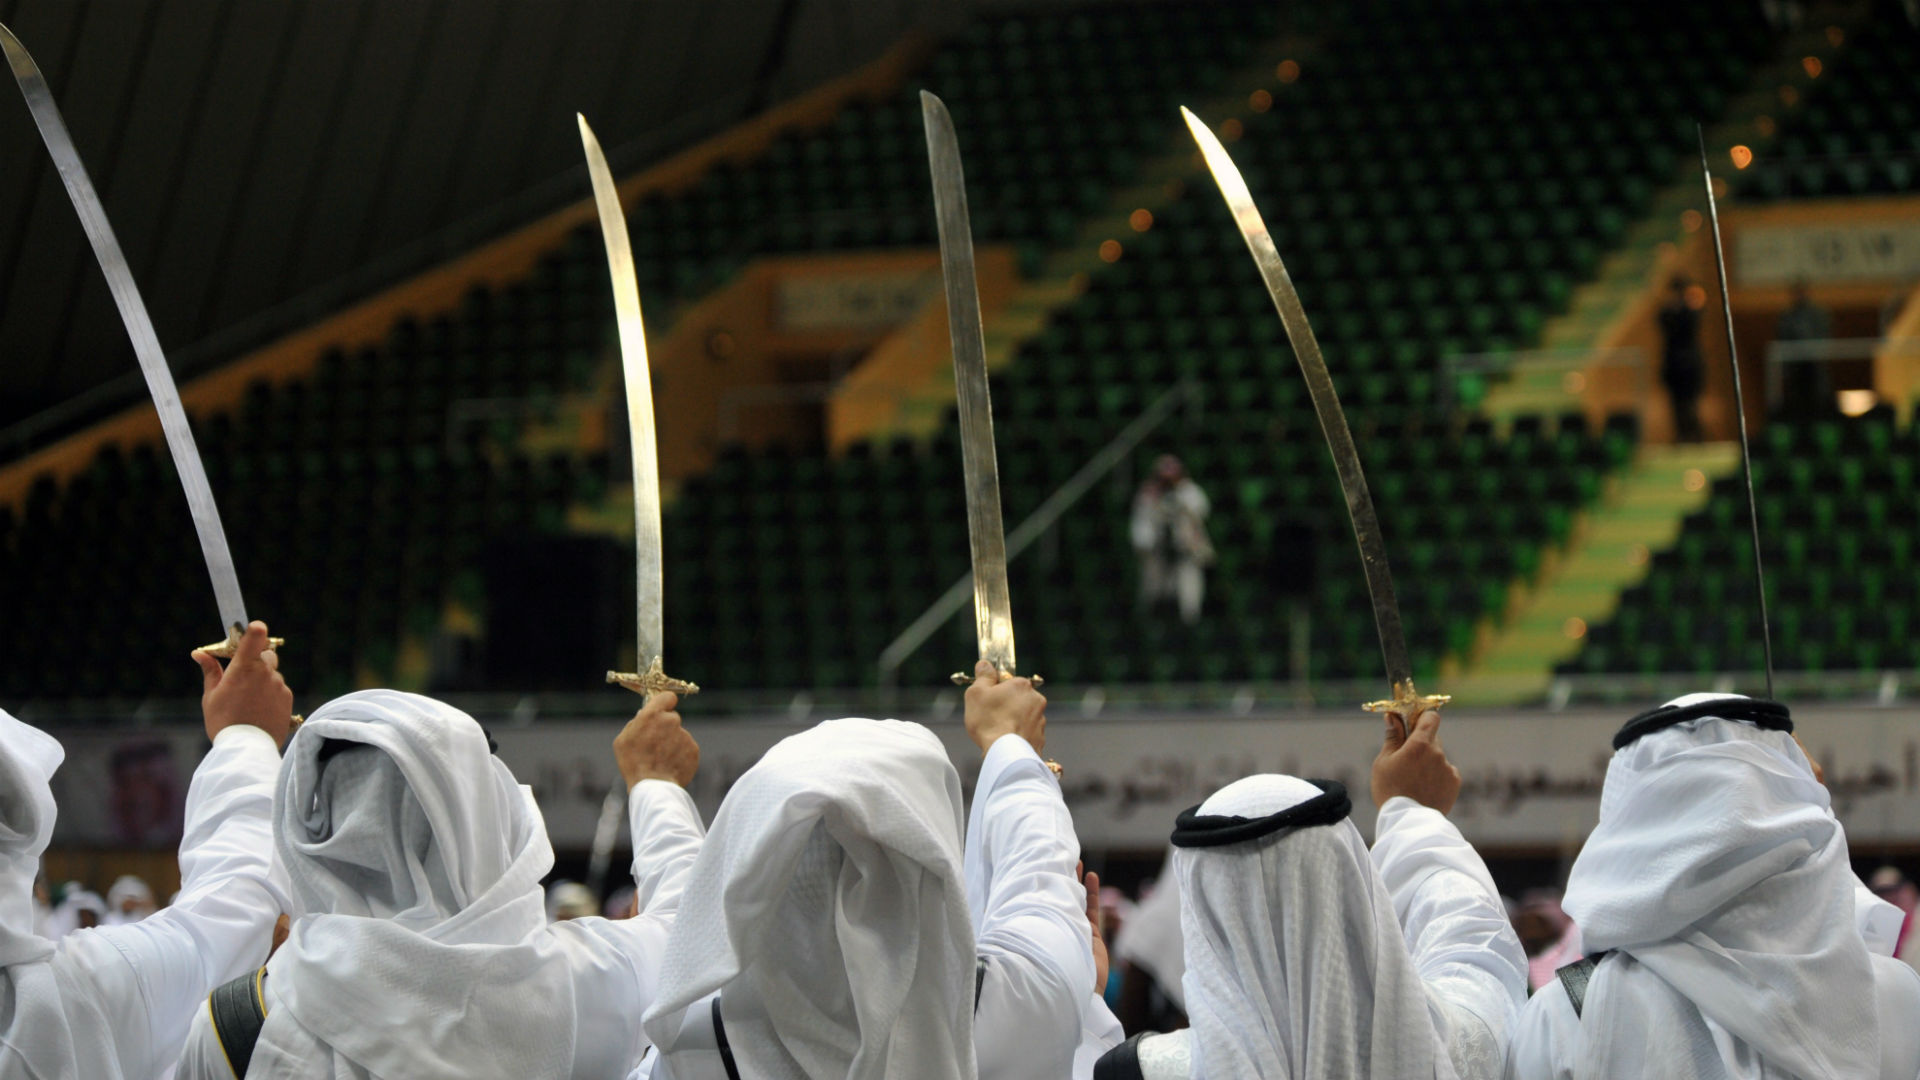 Il Rinascimento made in Arabia Saudita: in forte aumento le esecuzioni capitali e le violazioni dei diritti umani